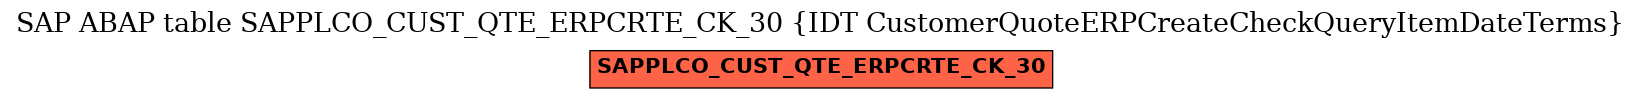 E-R Diagram for table SAPPLCO_CUST_QTE_ERPCRTE_CK_30 (IDT CustomerQuoteERPCreateCheckQueryItemDateTerms)